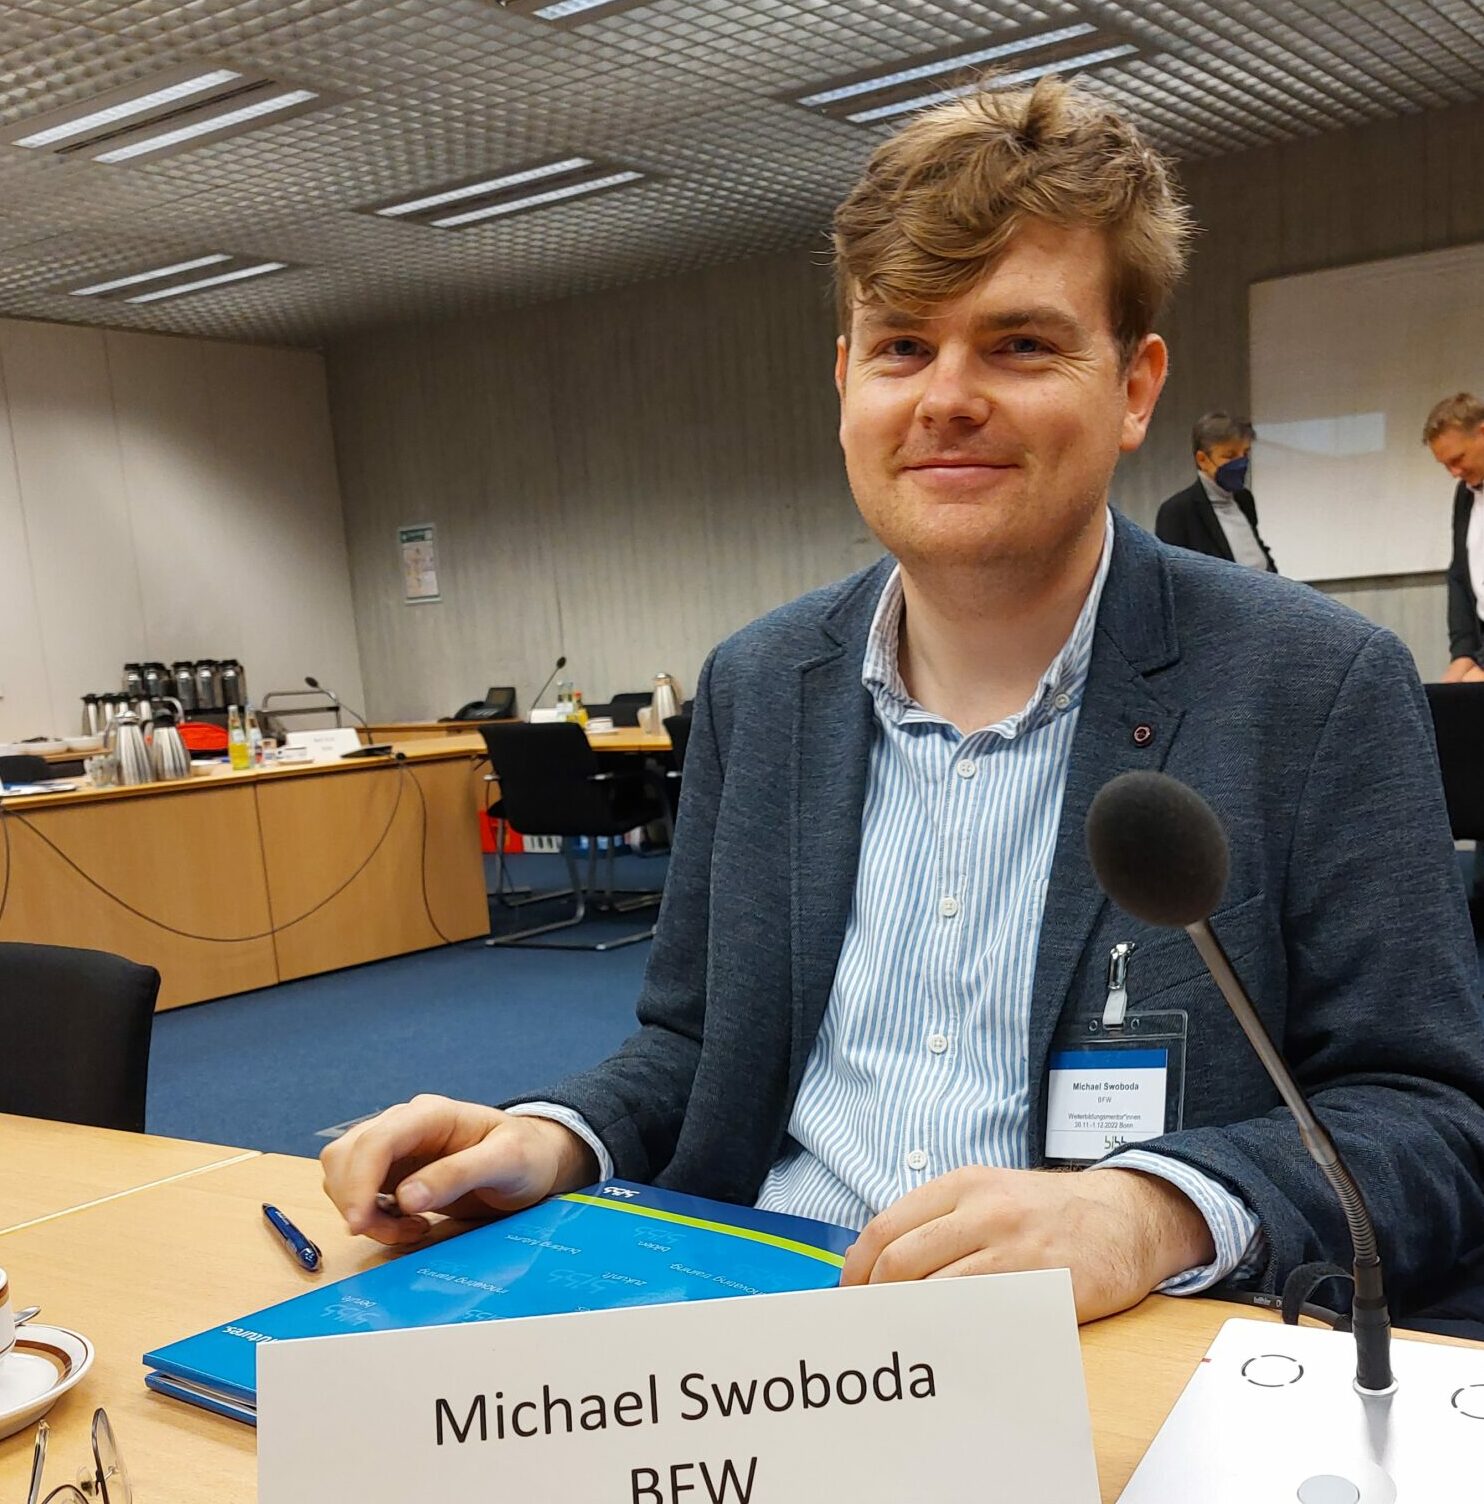 Kollege Michael Swoboda freut sich auf den Austausch zum Thema Weiterbildungsmentor*innen